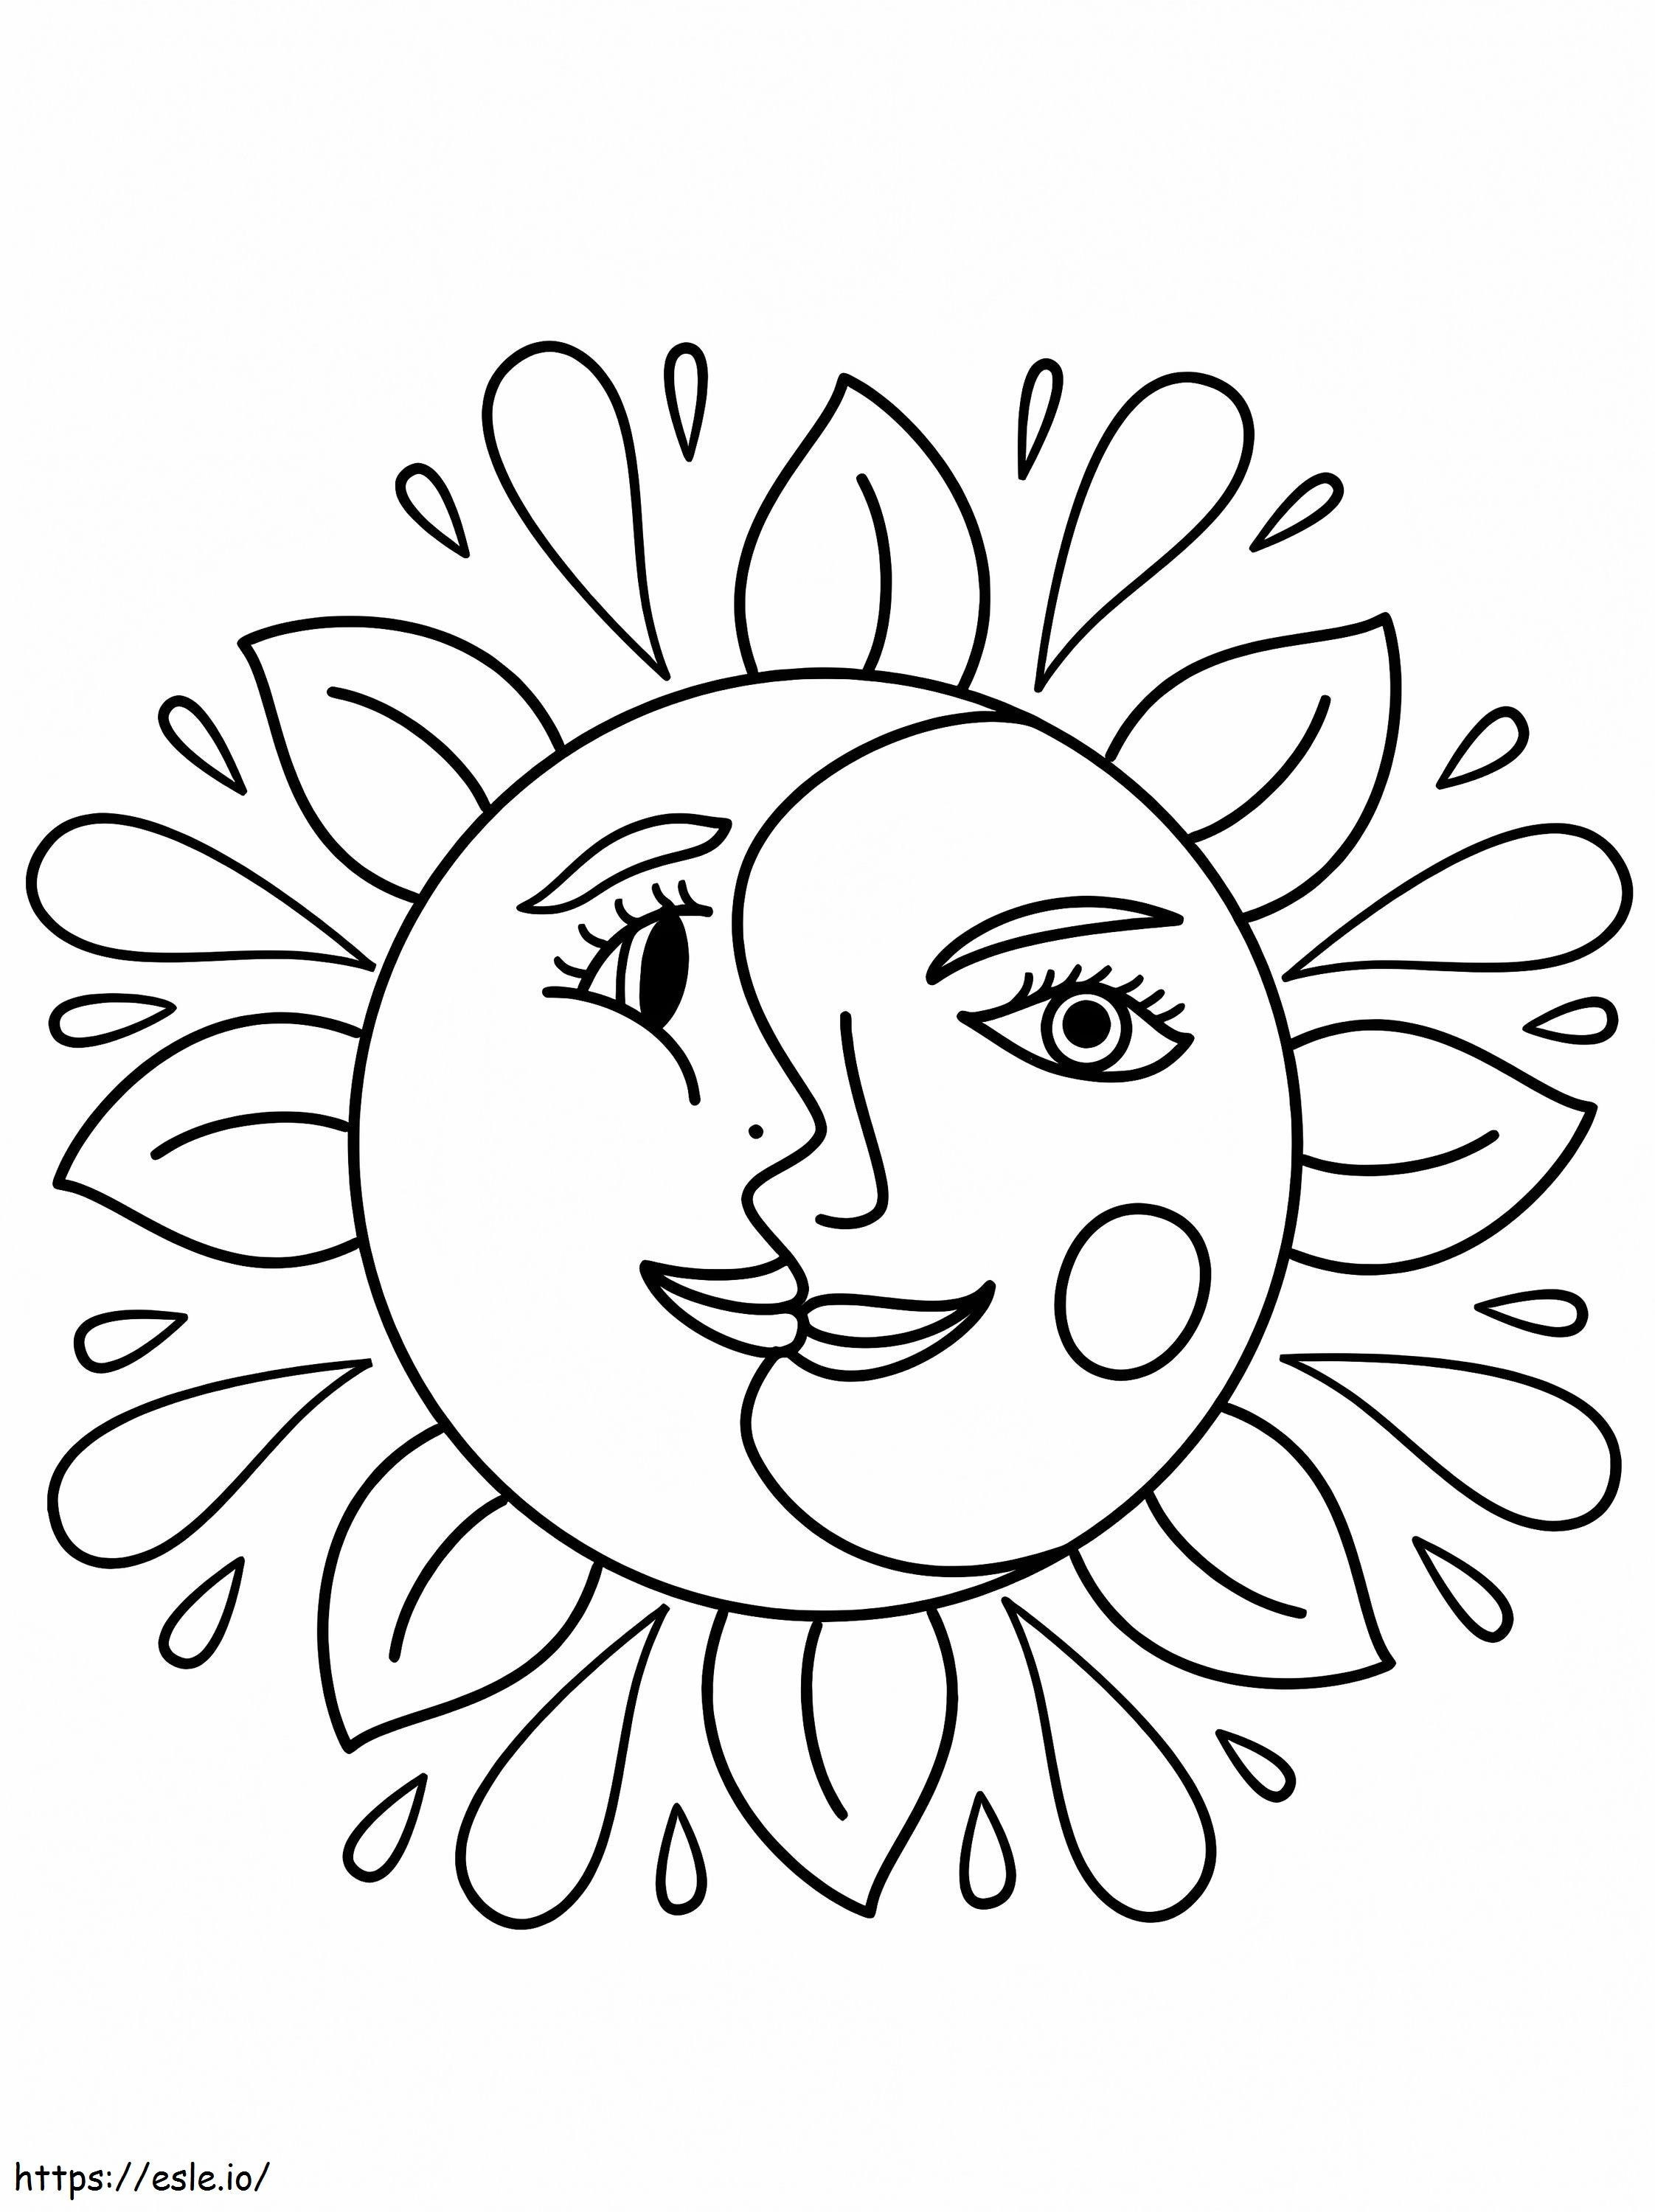 Güneş ve Ay Trippy Boyama Sayfası boyama